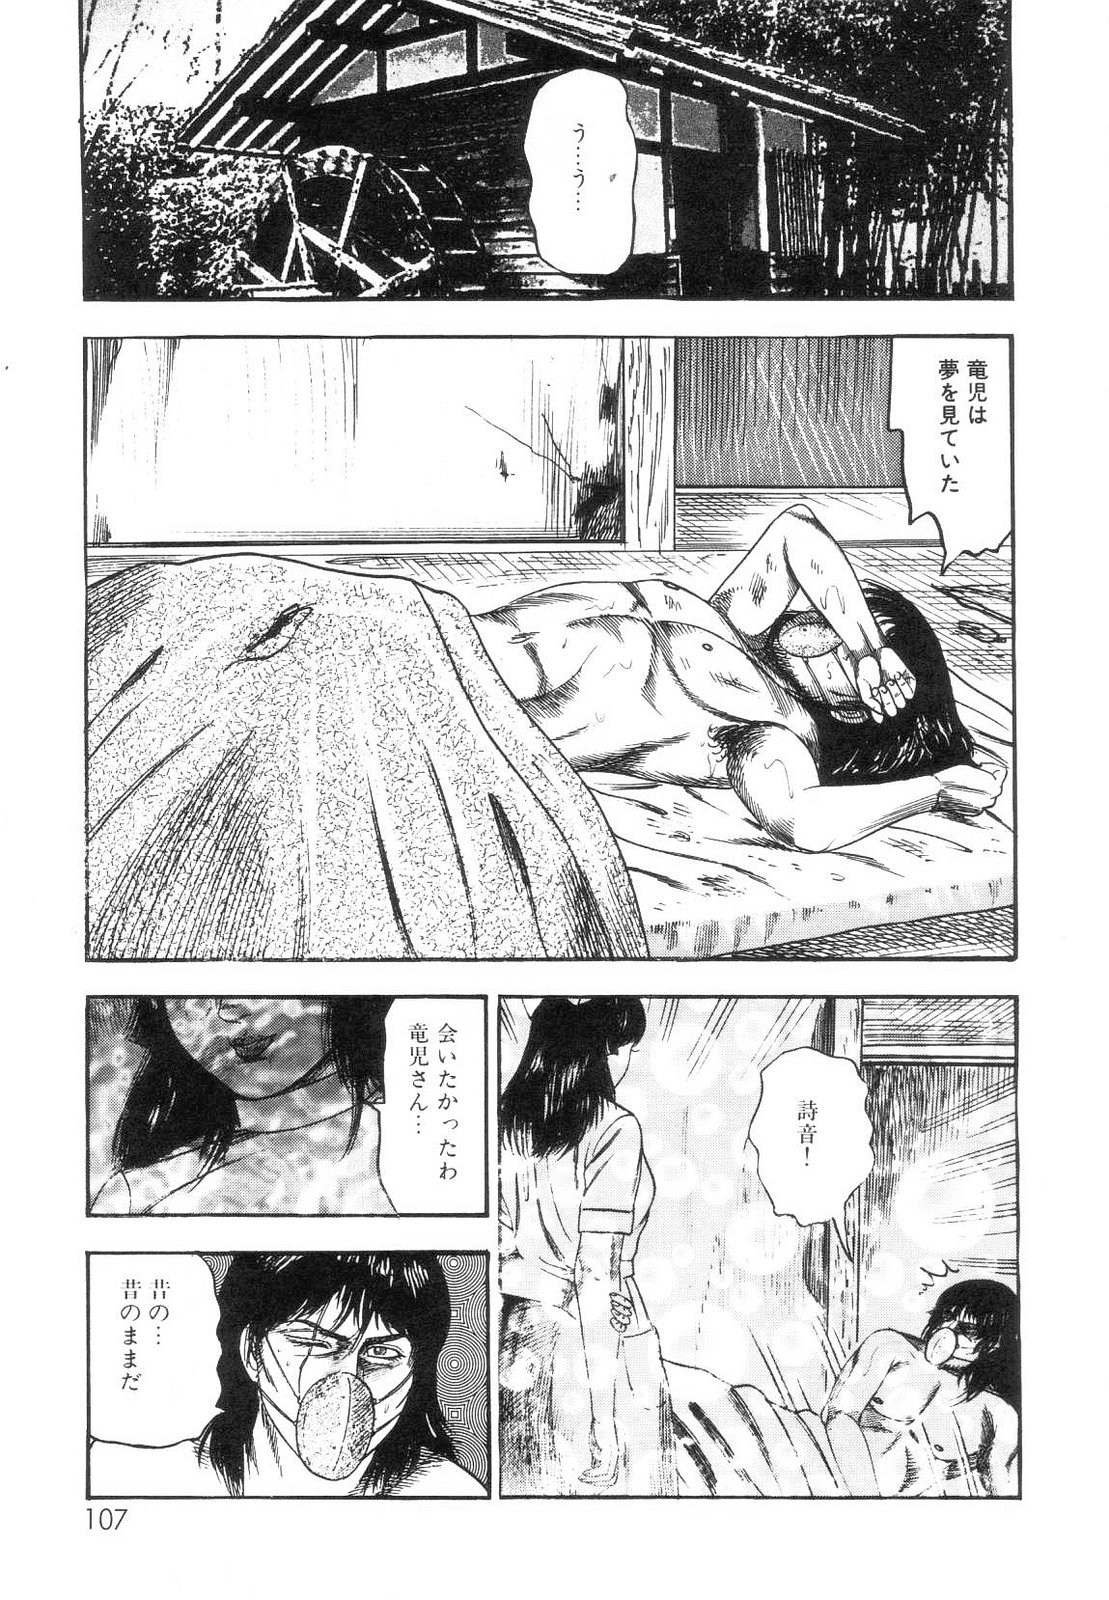 [Sanjou Tomomi] Shiro no Mokushiroku Vol. 7 - Shiiku Ningyou Erika no Shou 108